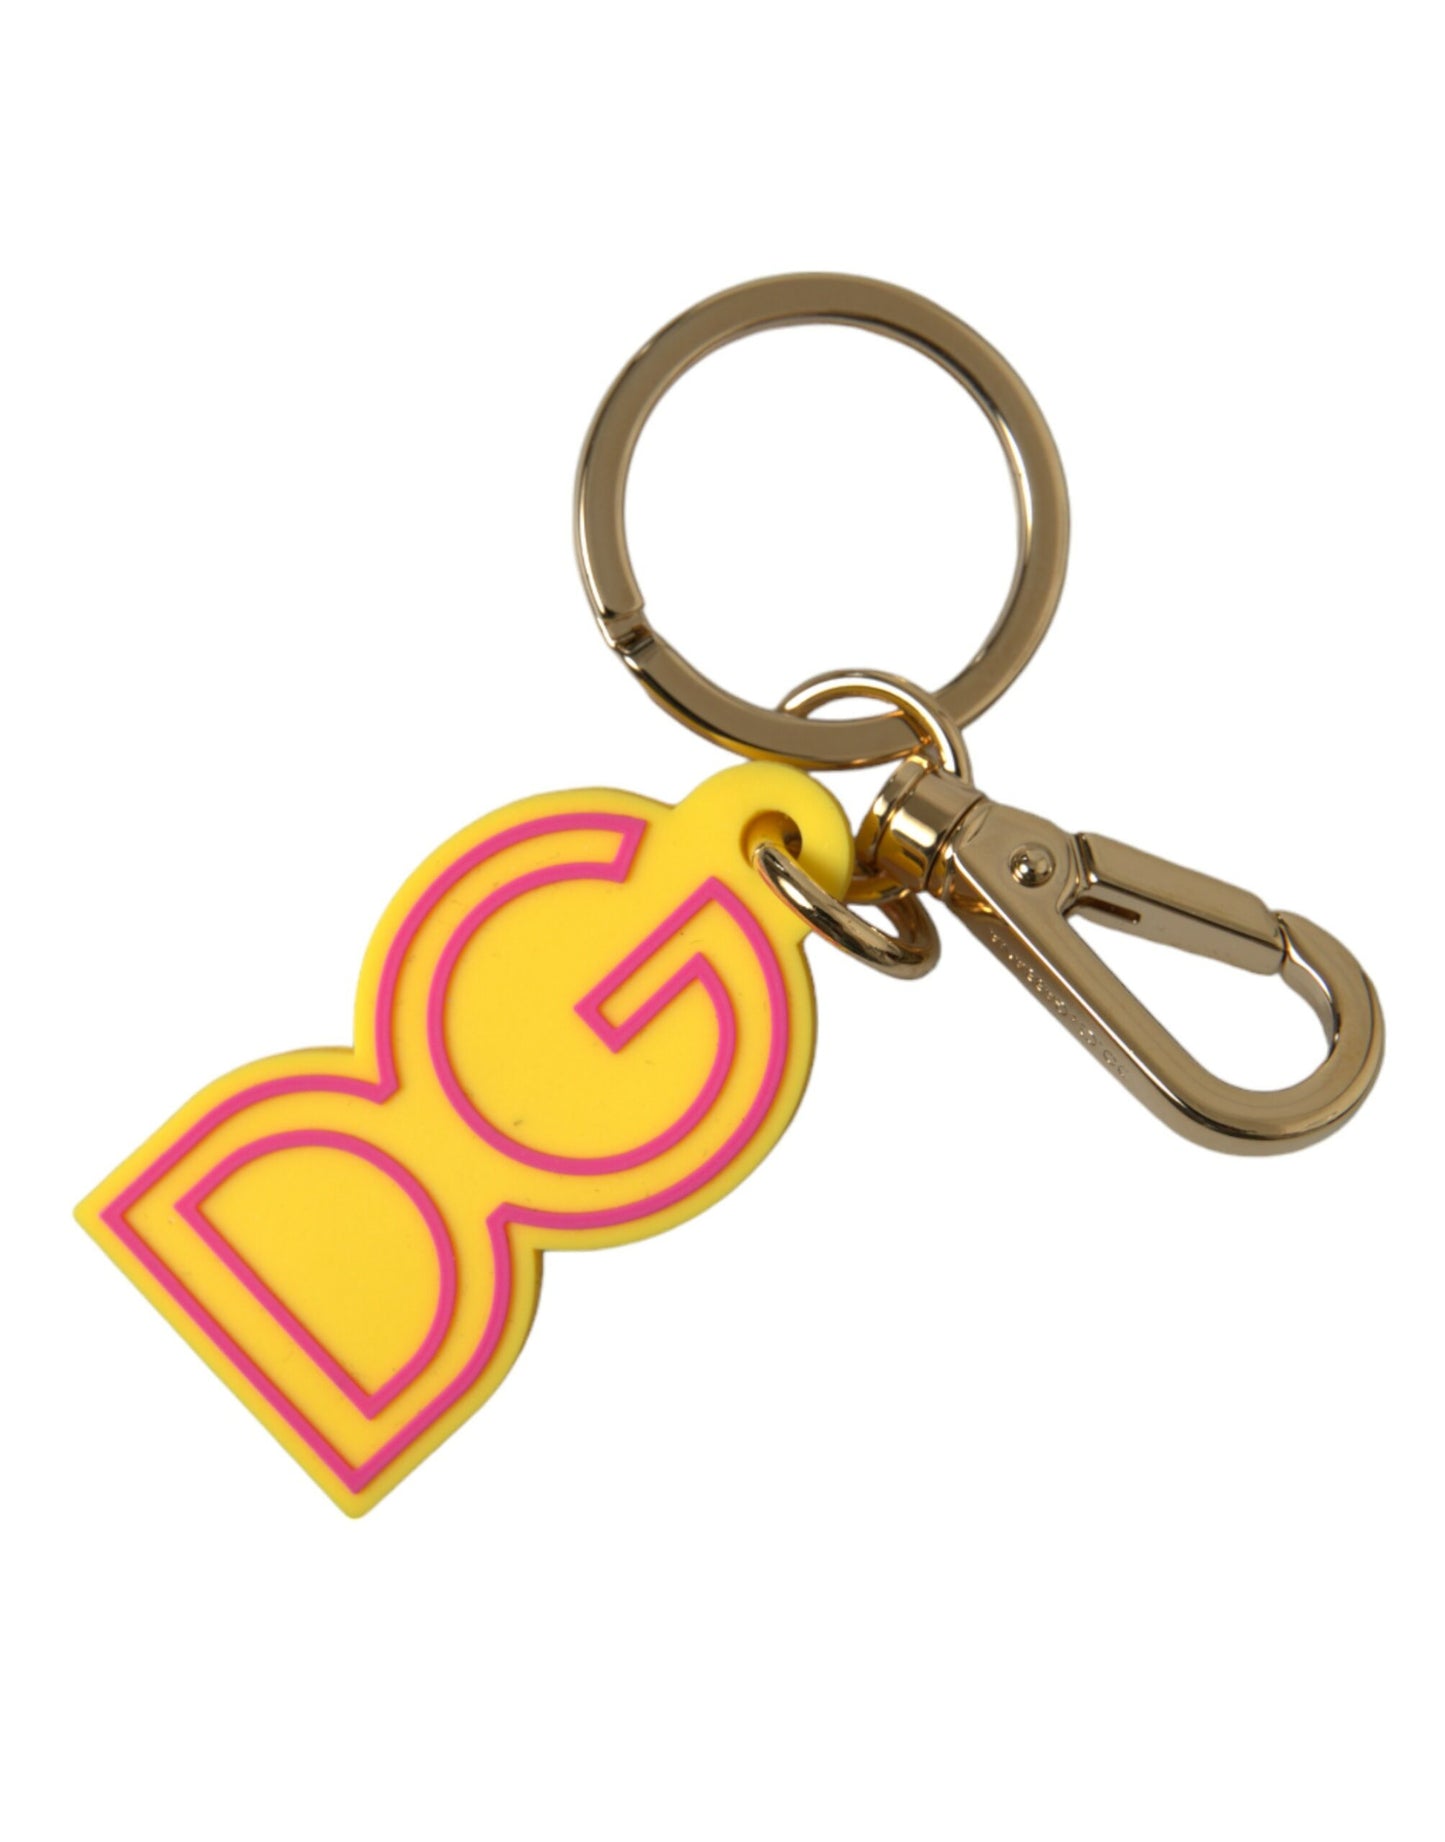 Dolce & gabbana yellow gold keychain charm